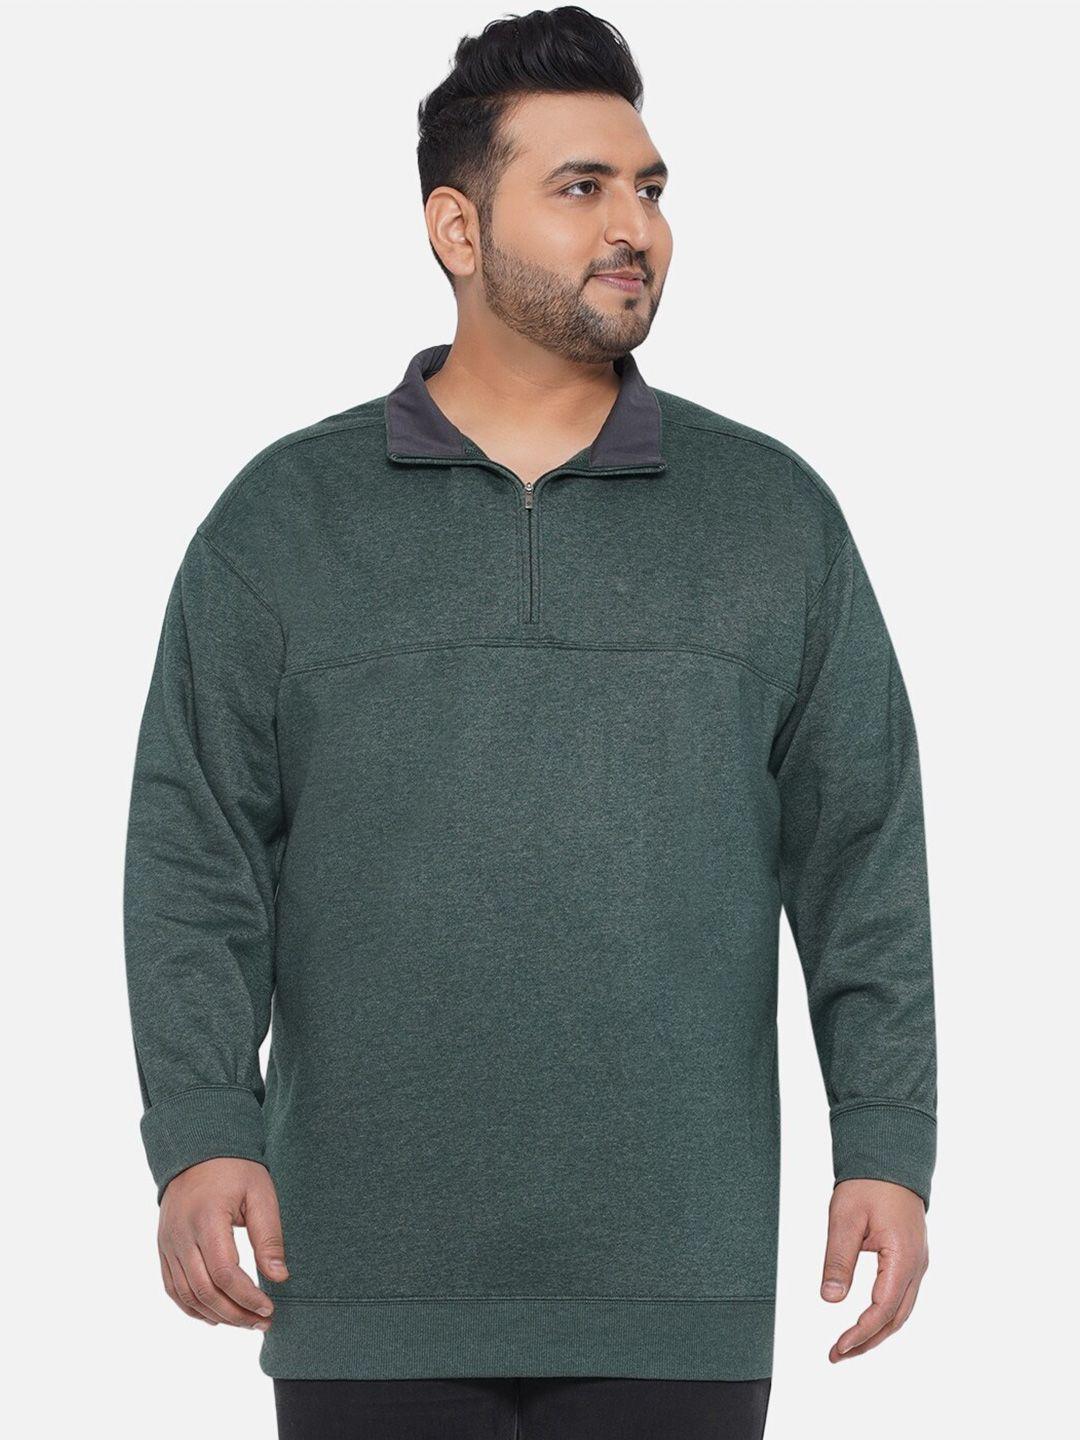 santonio-plus-size-mock-collar-pure-cotton-sweatshirt